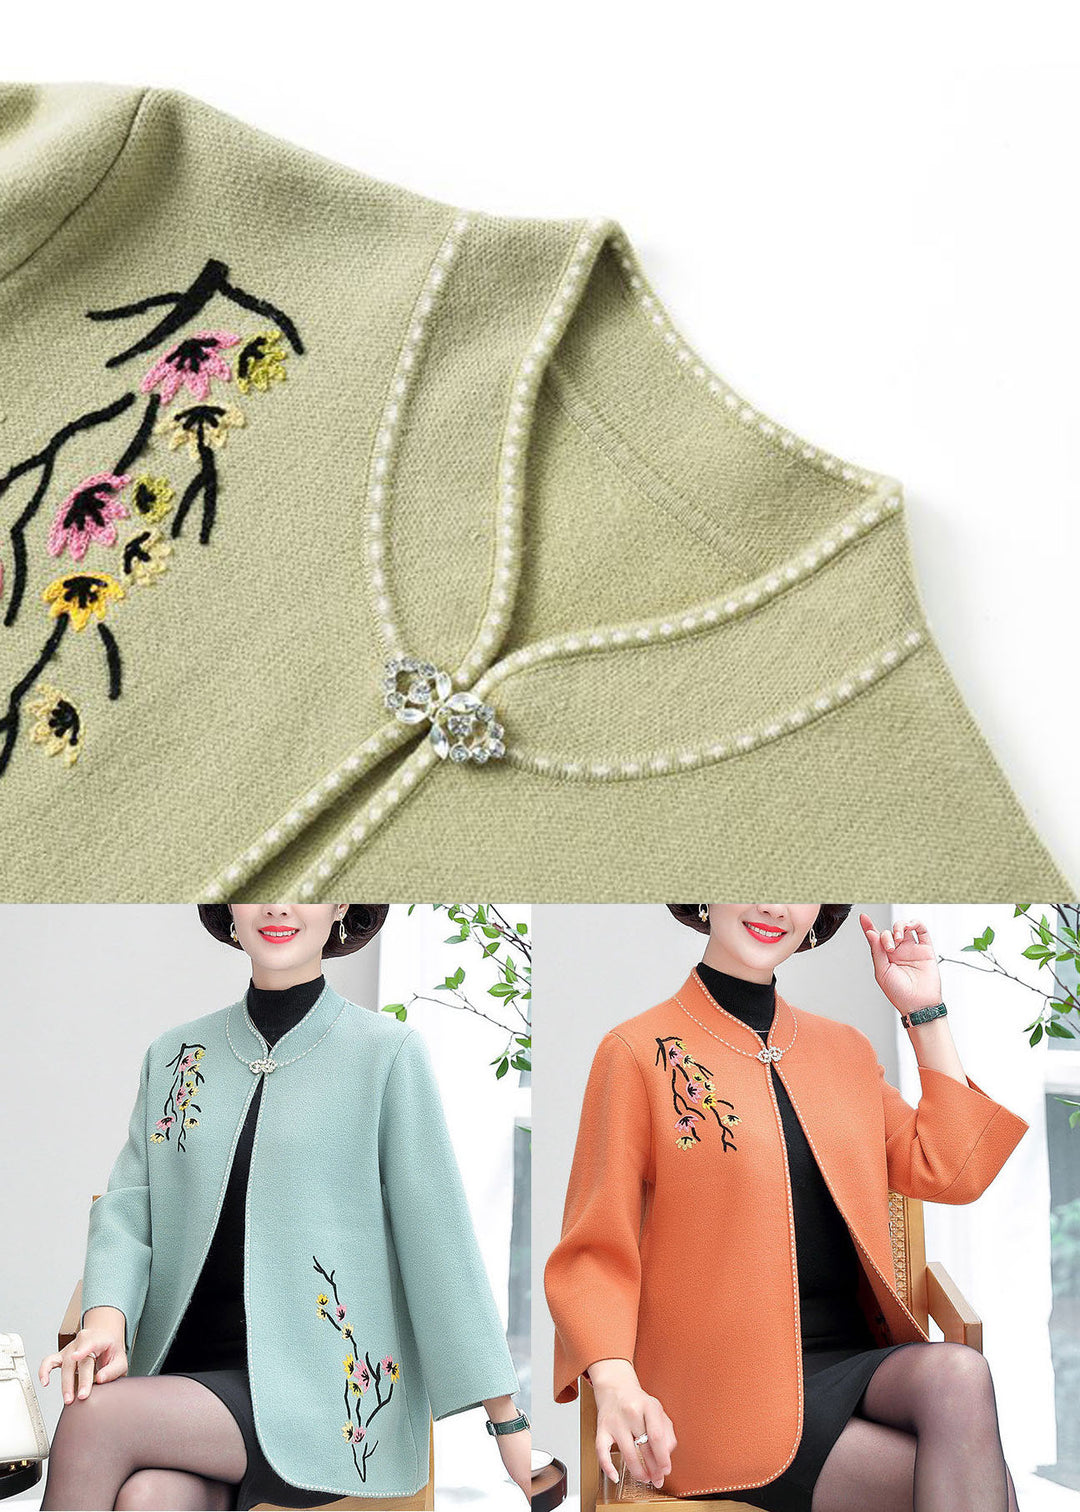 Orange Woolen Cardigans Embroideried Stand Collar Winter